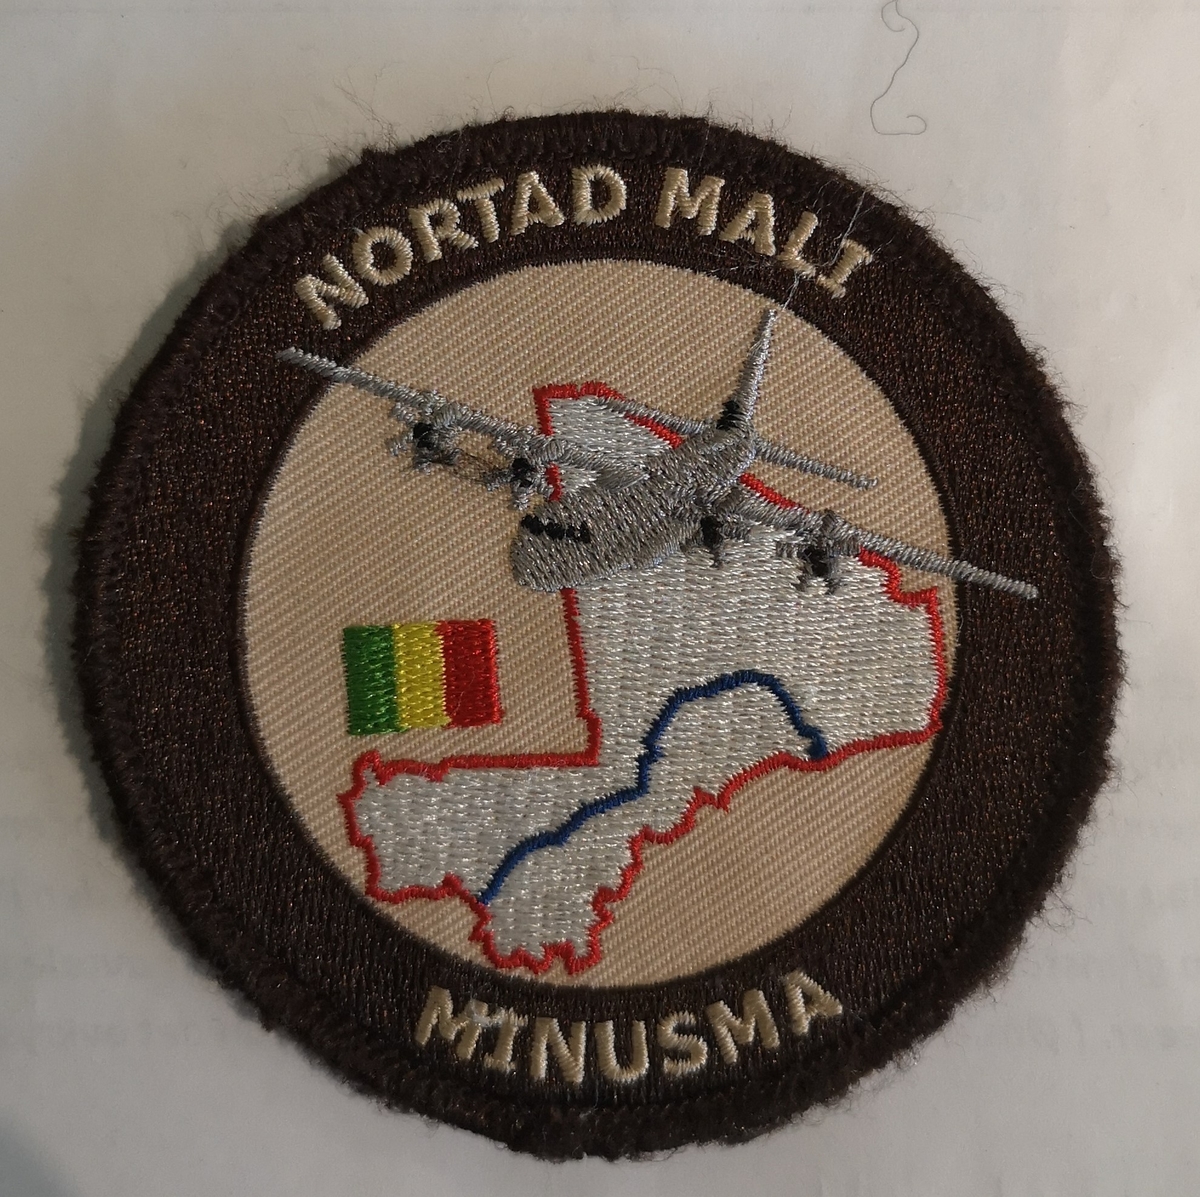 Kart over Mali, med landets flagg, samt C-130 Herkules.